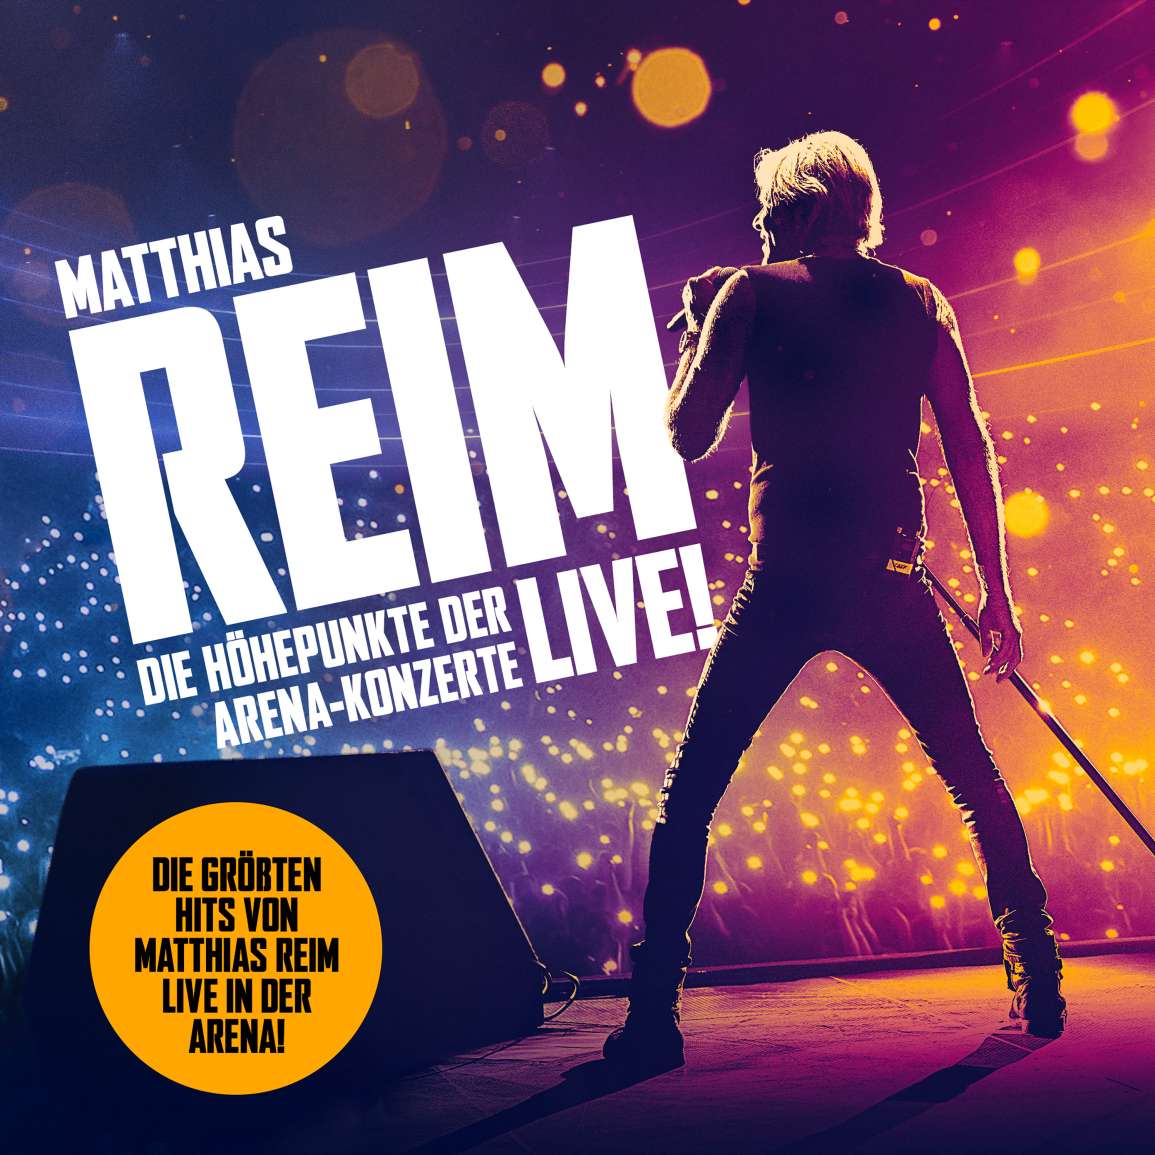 Matthias Reim, Die Höhepunkte der Arena-Konzerte - Live!, CD